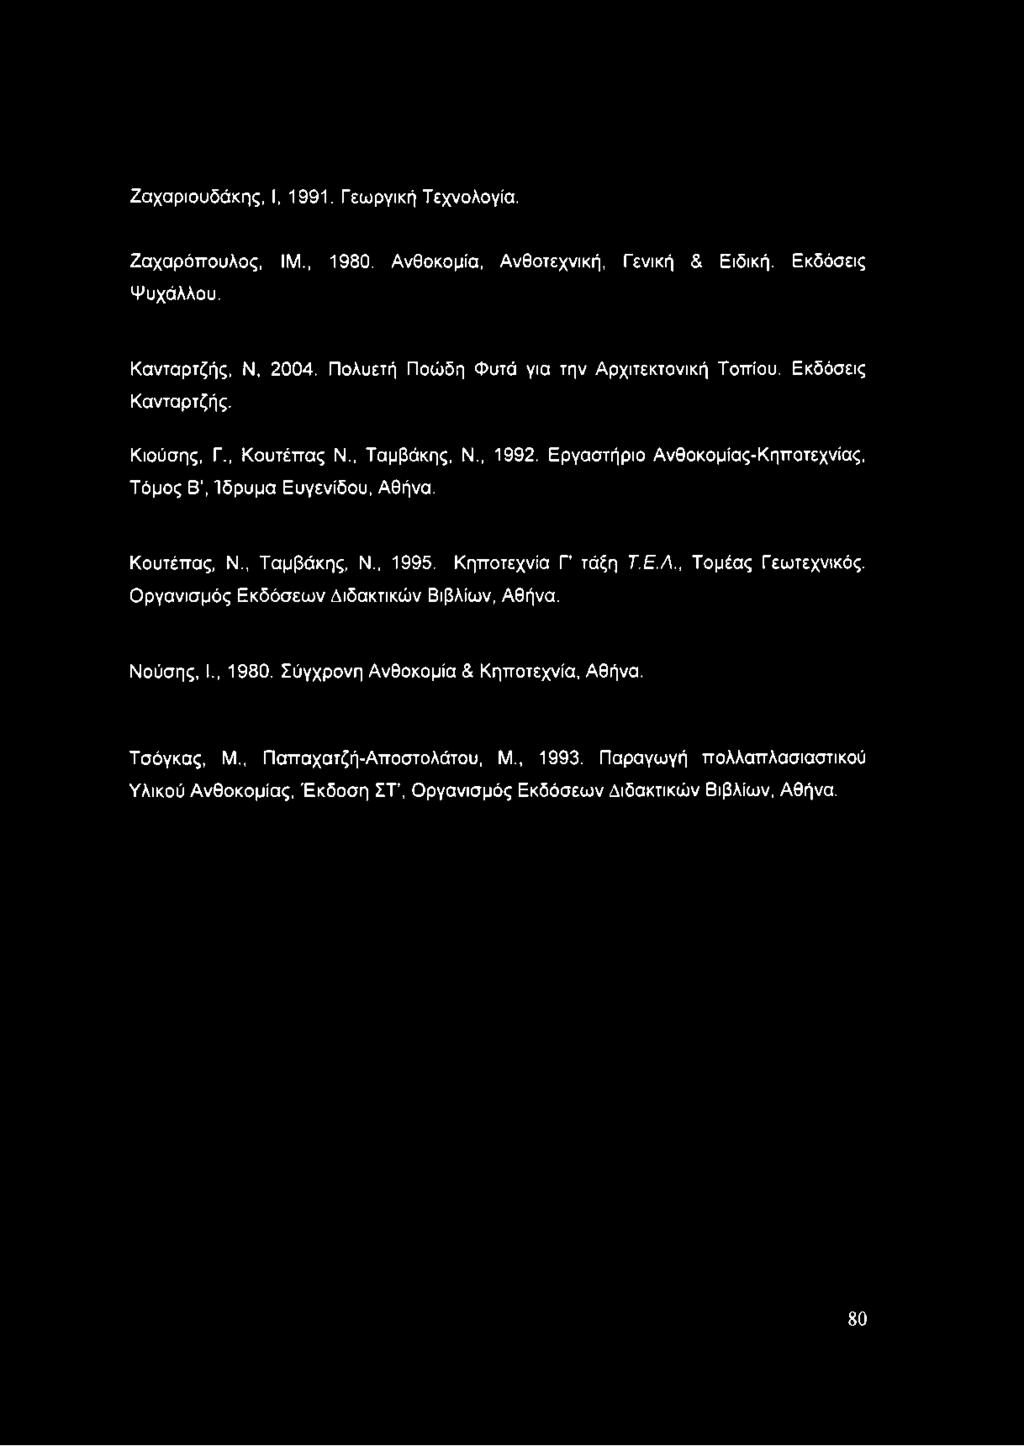 Εργαστήριο Ανθοκομίας-Κηποτεχνίας, Τόμος Β, Ίδρυμα Ευγενίδου, Αθήνα. Κουτέπας, Ν., Ταμβάκης, Ν., 1995. Κηποτεχνία Γ' τάξη Τ.Ε.Λ., Τομέας Γεωτεχνικός.